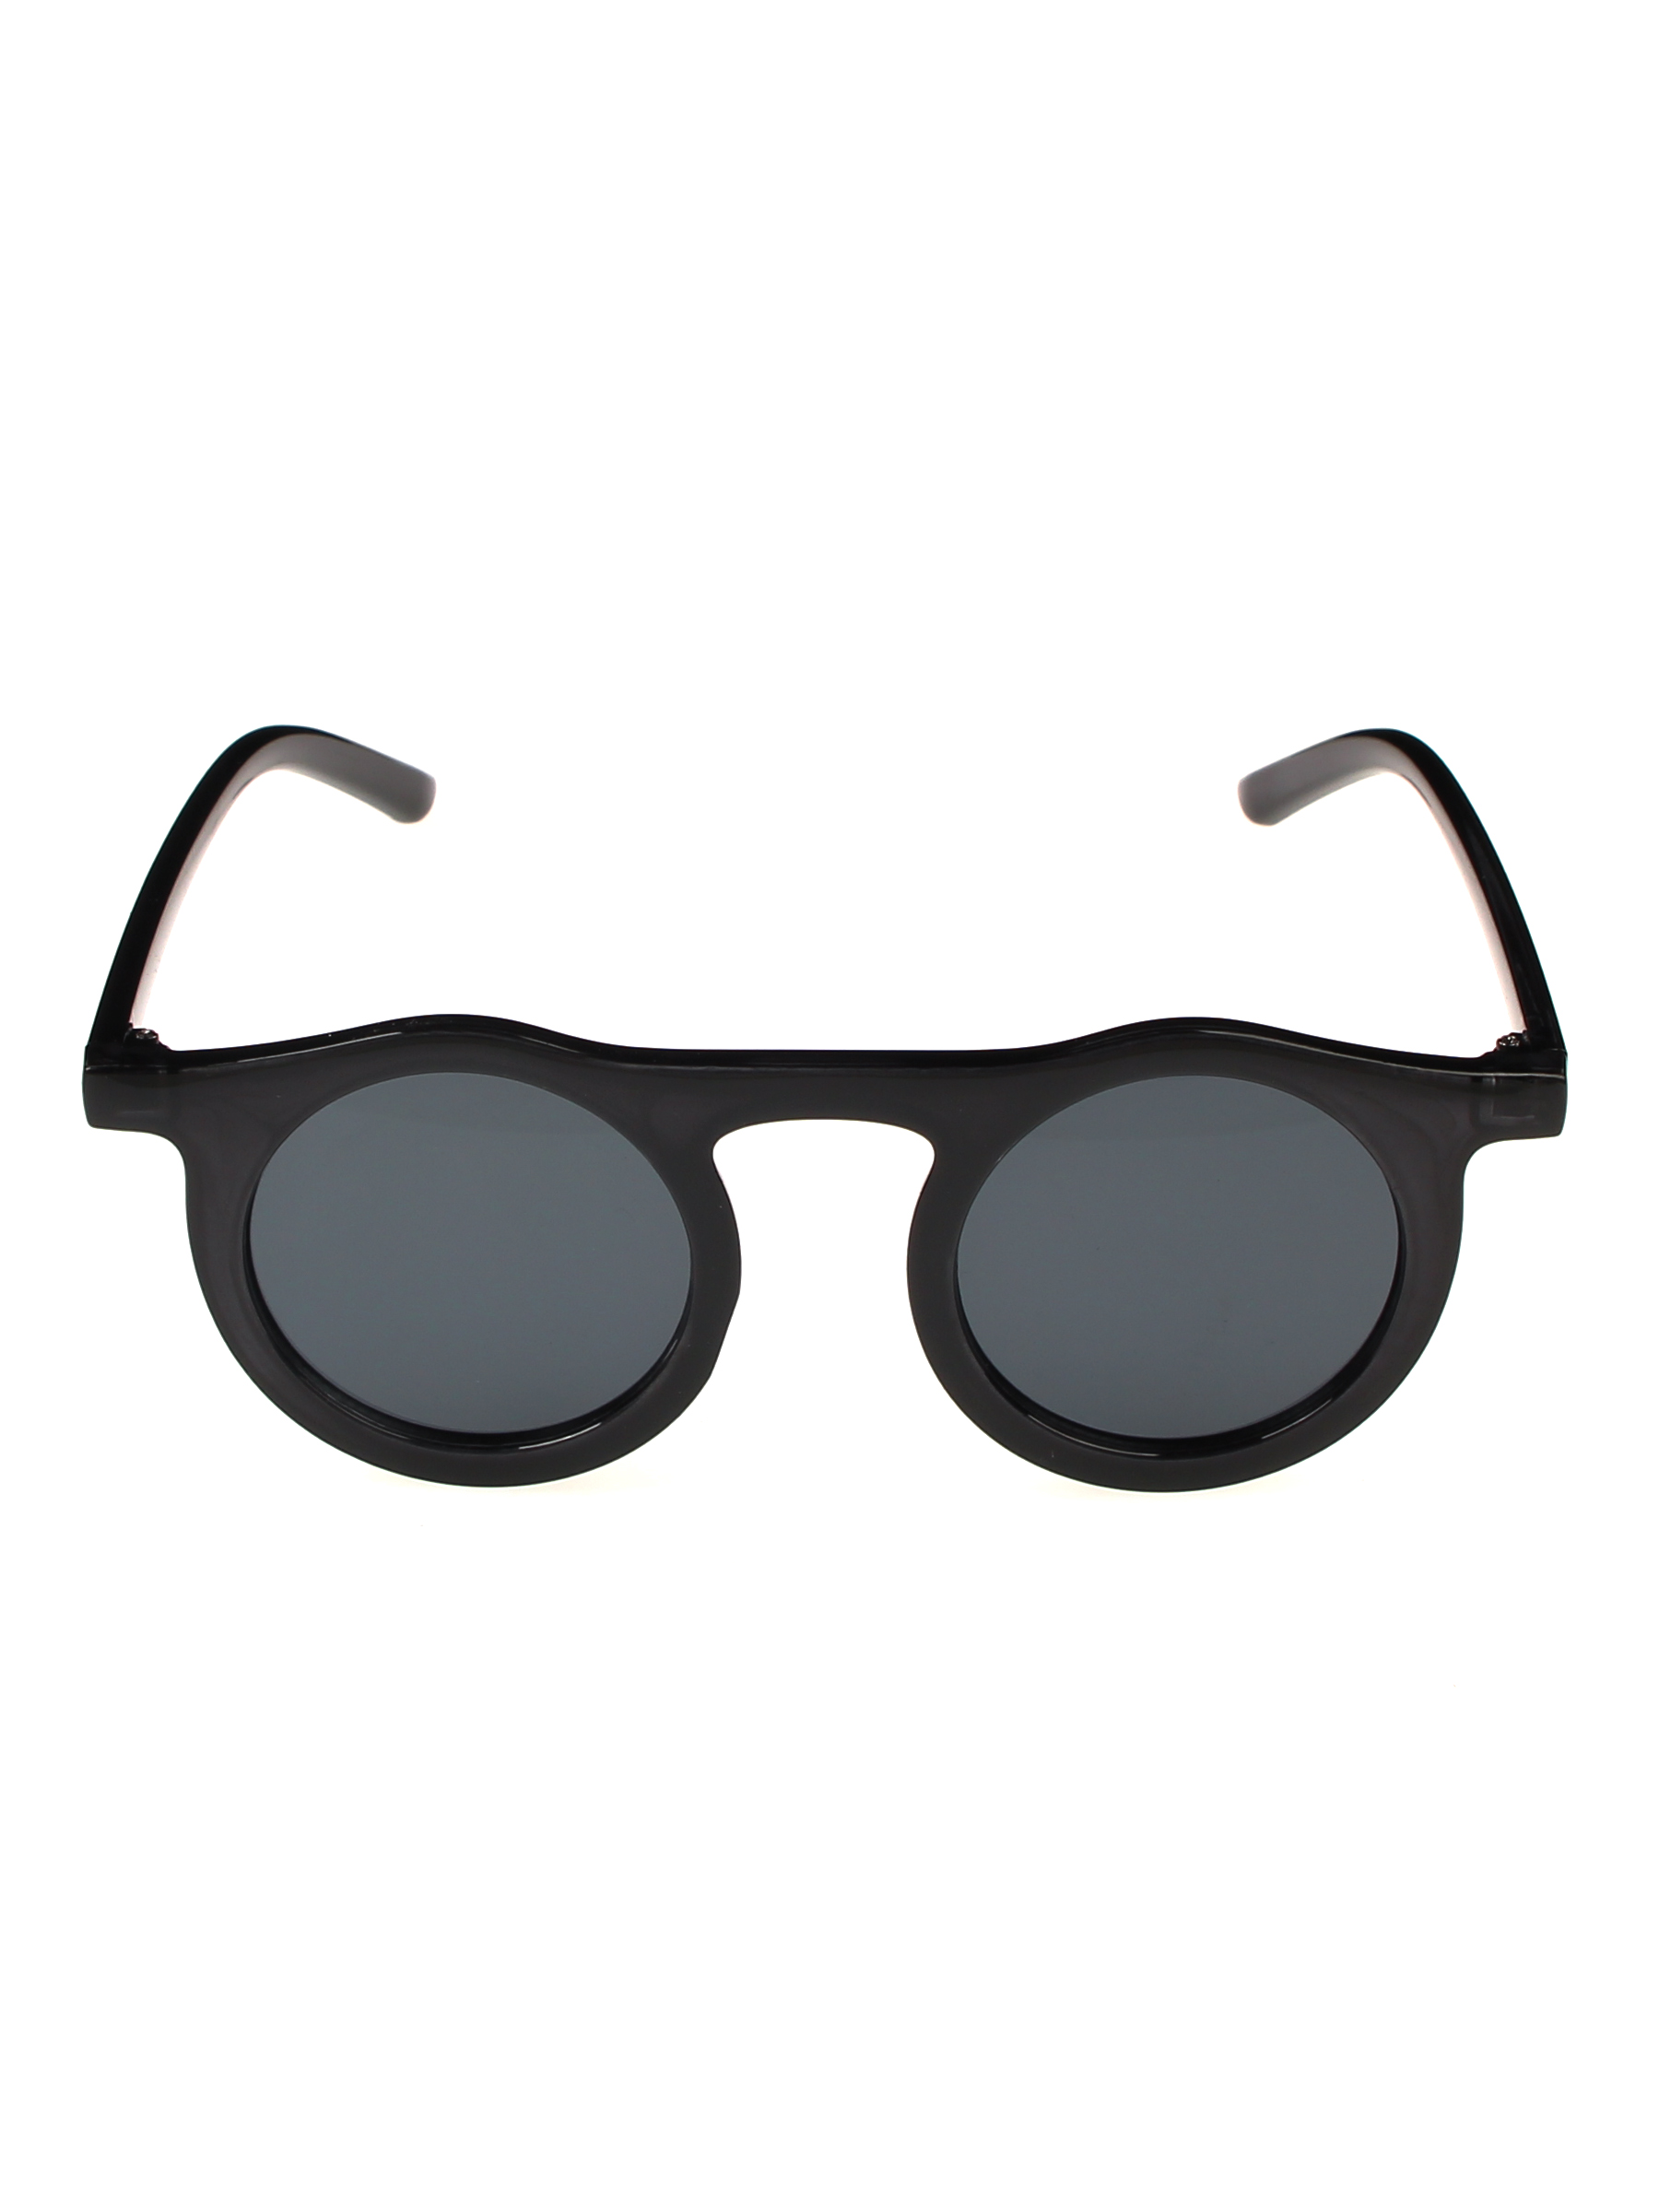 Солнцезащитные очки женские Pretty Mania NDP013 черные